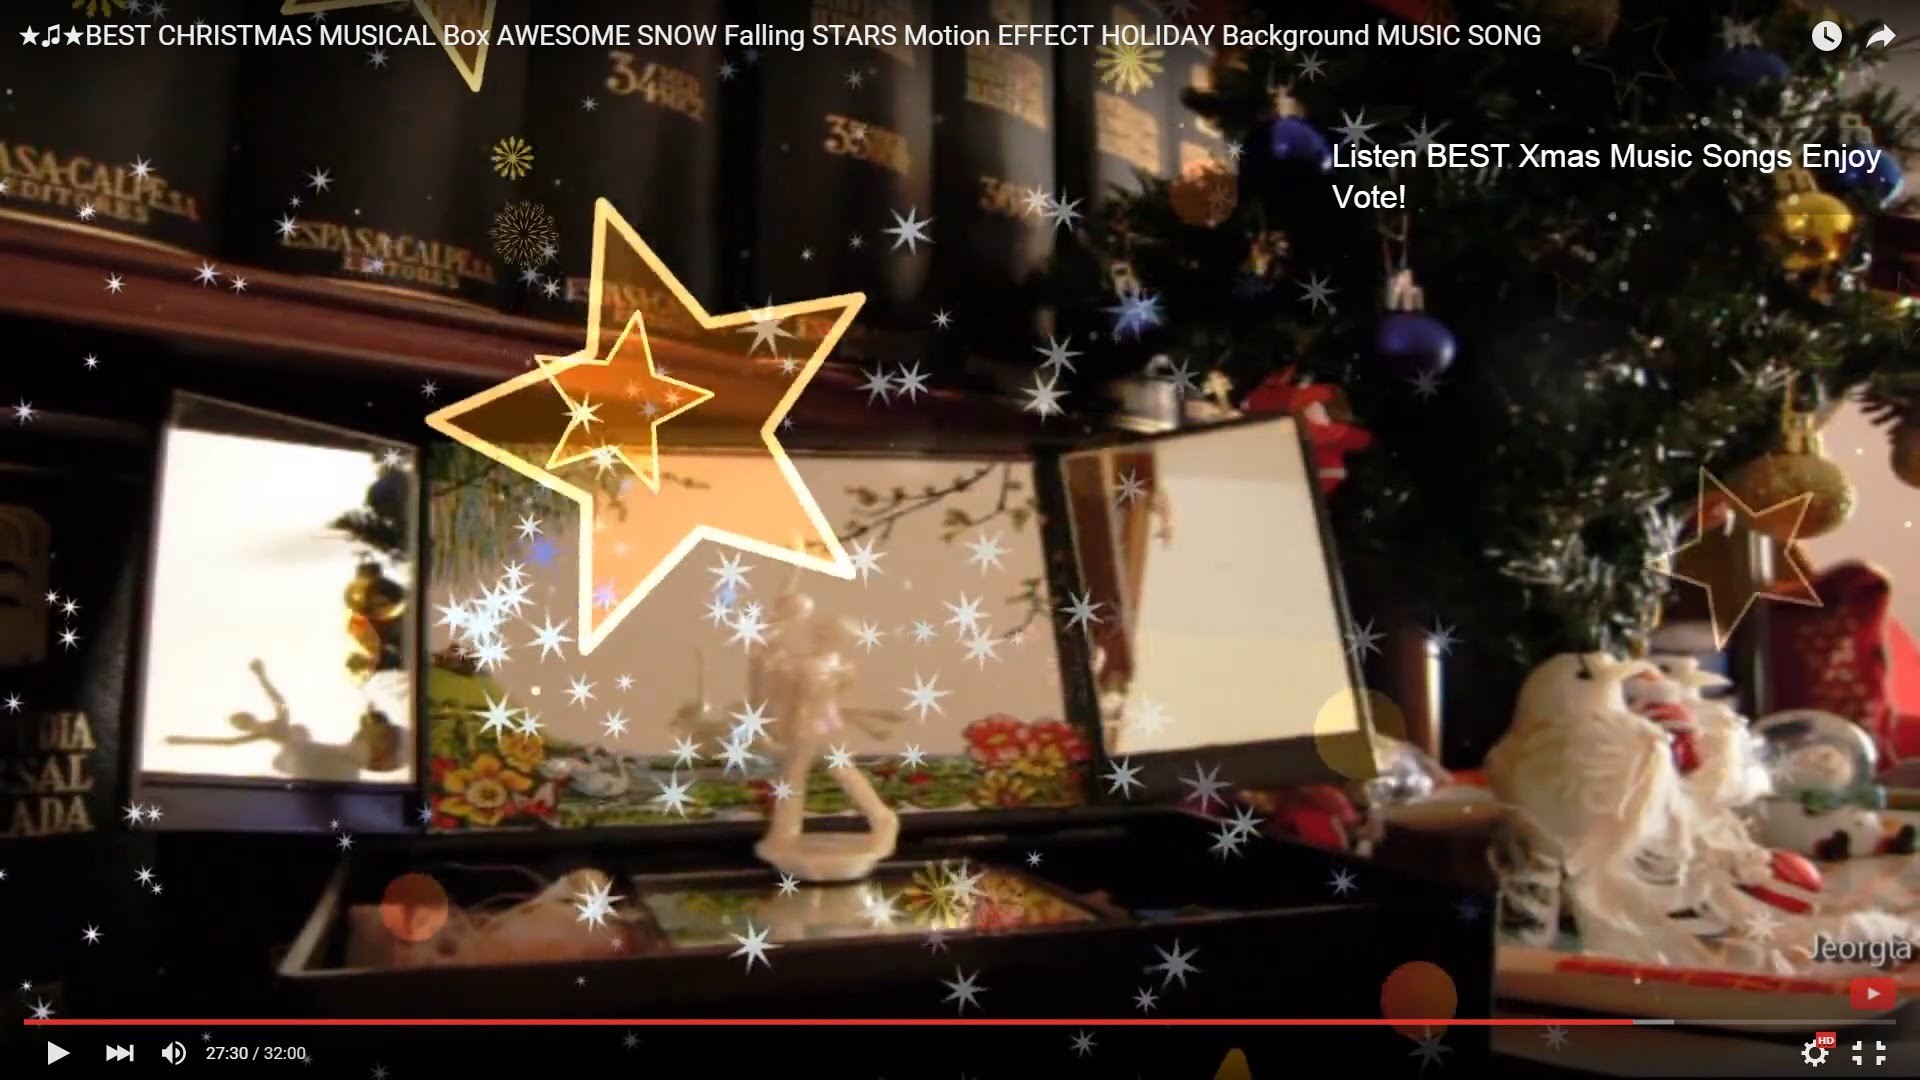 ââ«âReady for CHRISTMAS? is coming SOON-BEST MUSICAL FAMOUS Songs -âSNOW  Fall STARS Effects âHOLIDAYs